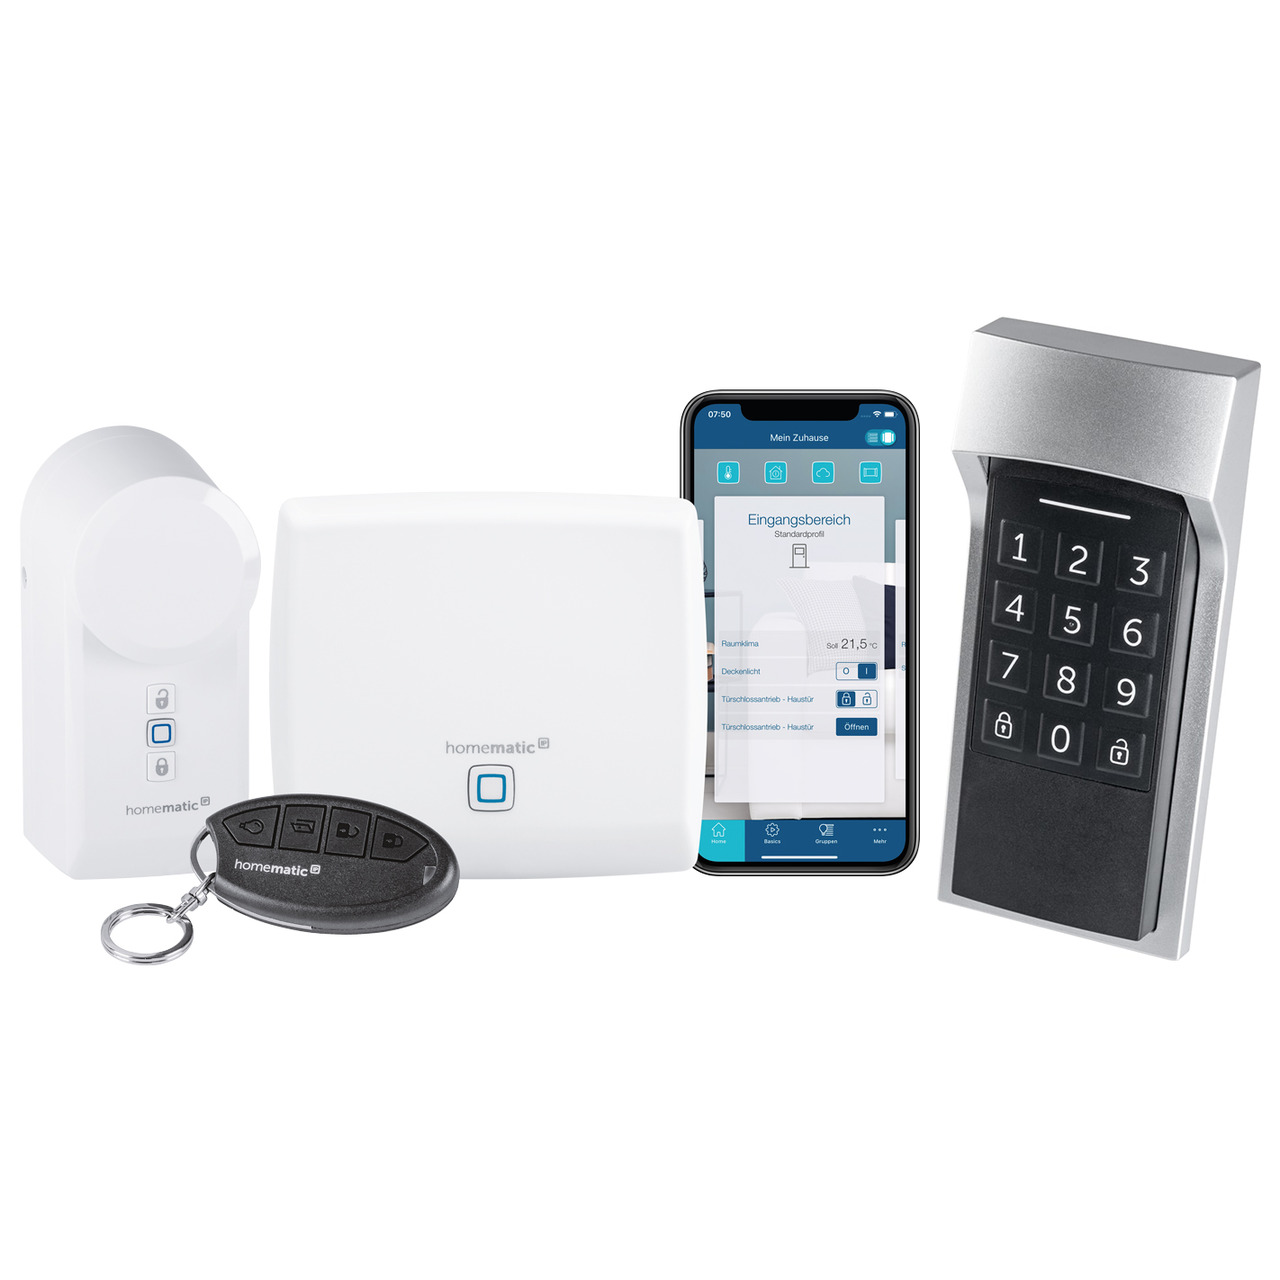 Homematic IP Smart Home Zugangslösung mit Access Point- Türschlossantrieb- Keypad und Fernbedienung unter Hausautomation